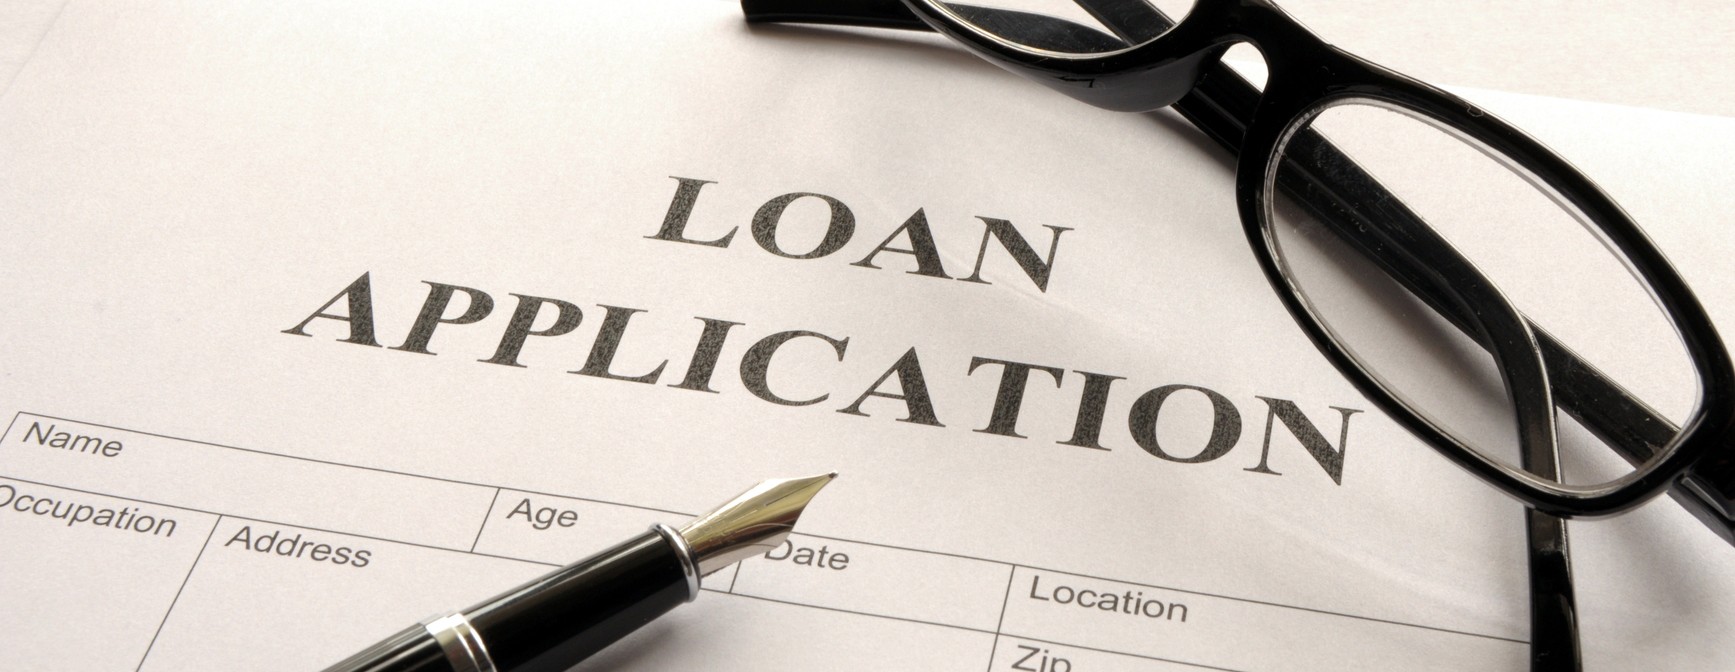 Personal Loan application